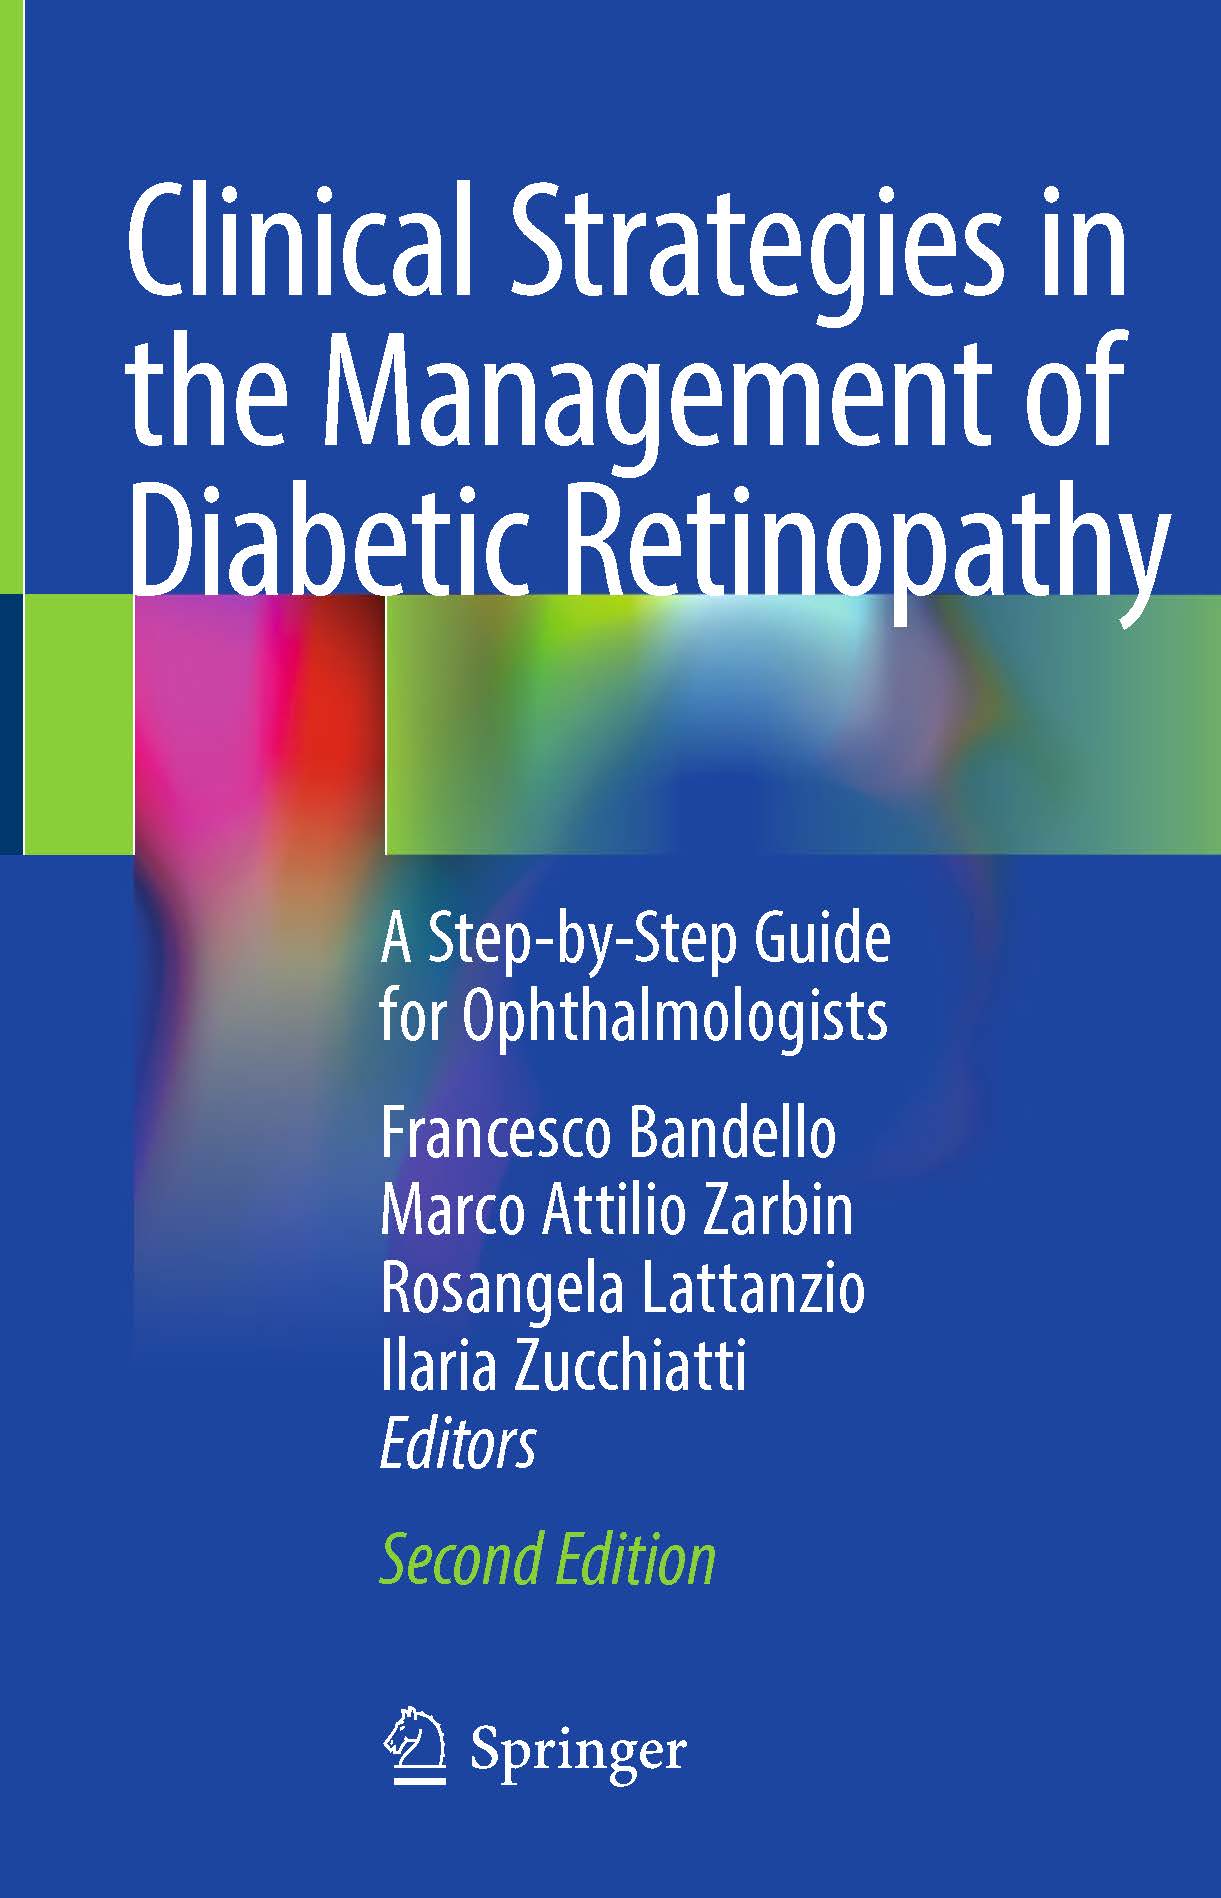 页面提取自－2019_Book_Clinical Strategies in the Management of Diabetic Retinopathy.jpg